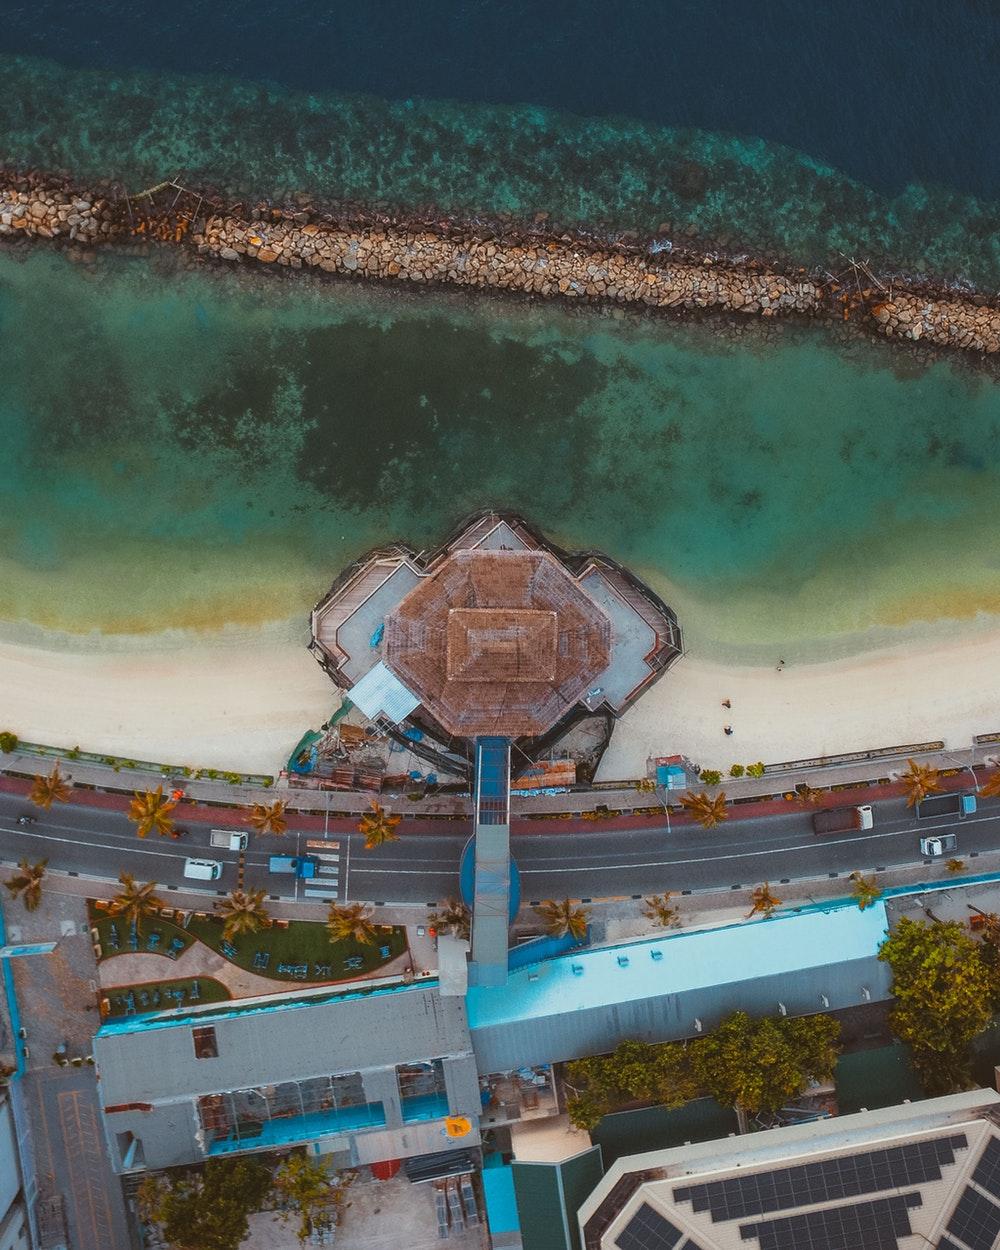 Rasfannu, Malé, Maldives Picture. Download Free Image